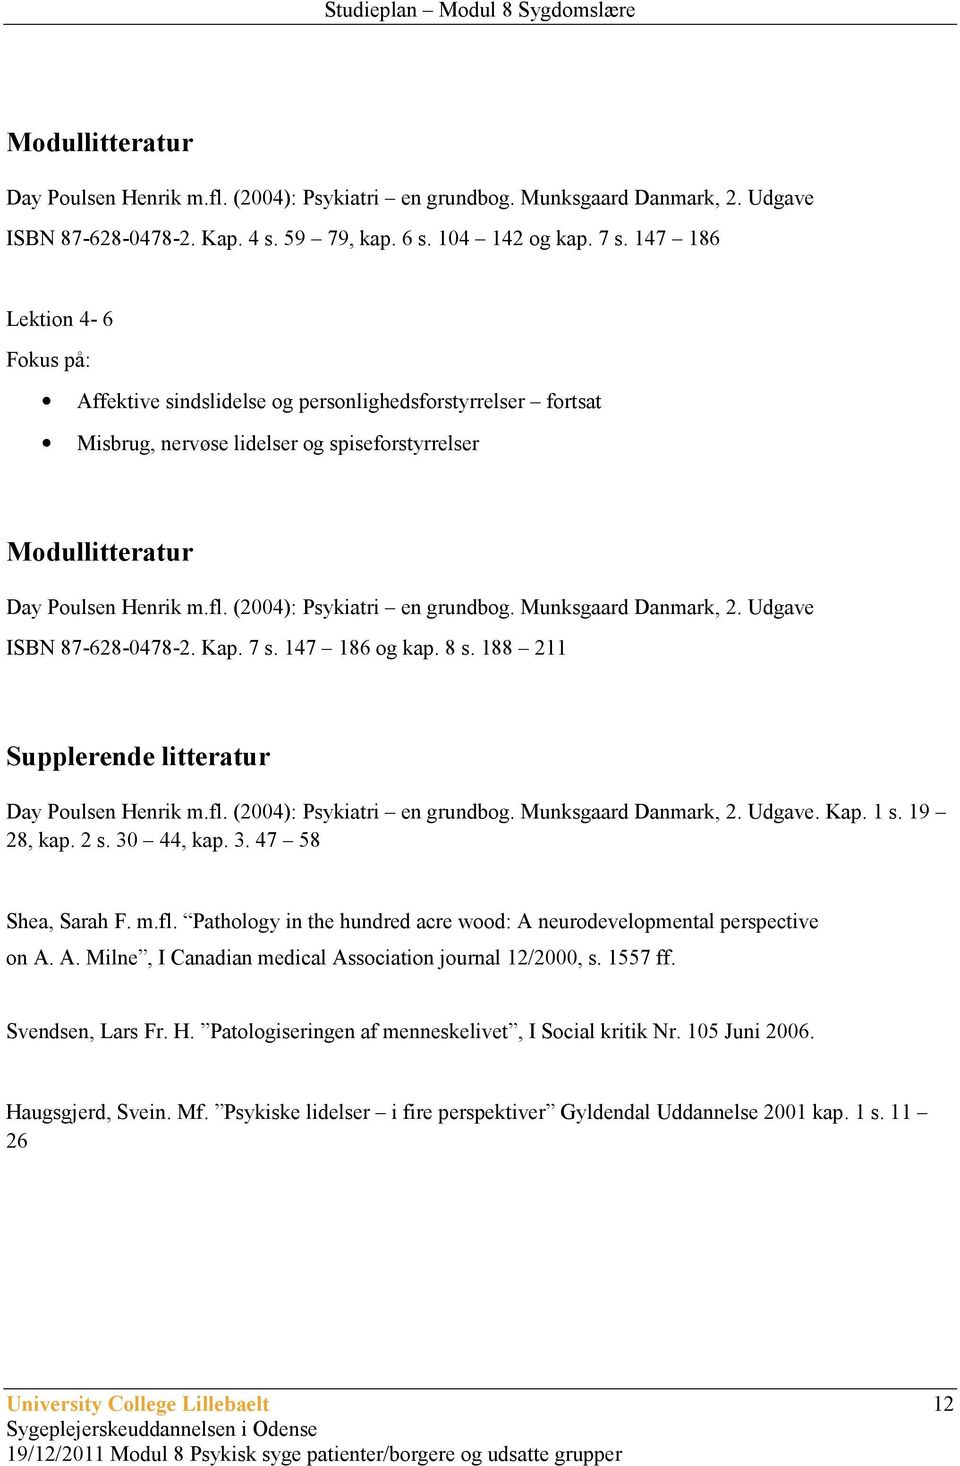 Munksgaard Danmark, 2. Udgave ISBN 87-628-0478-2. Kap. 7 s. 147 186 og kap. 8 s. 188 211 Supplerende litteratur Day Poulsen Henrik m.fl. (2004): Psykiatri en grundbog. Munksgaard Danmark, 2. Udgave. Kap. 1 s.